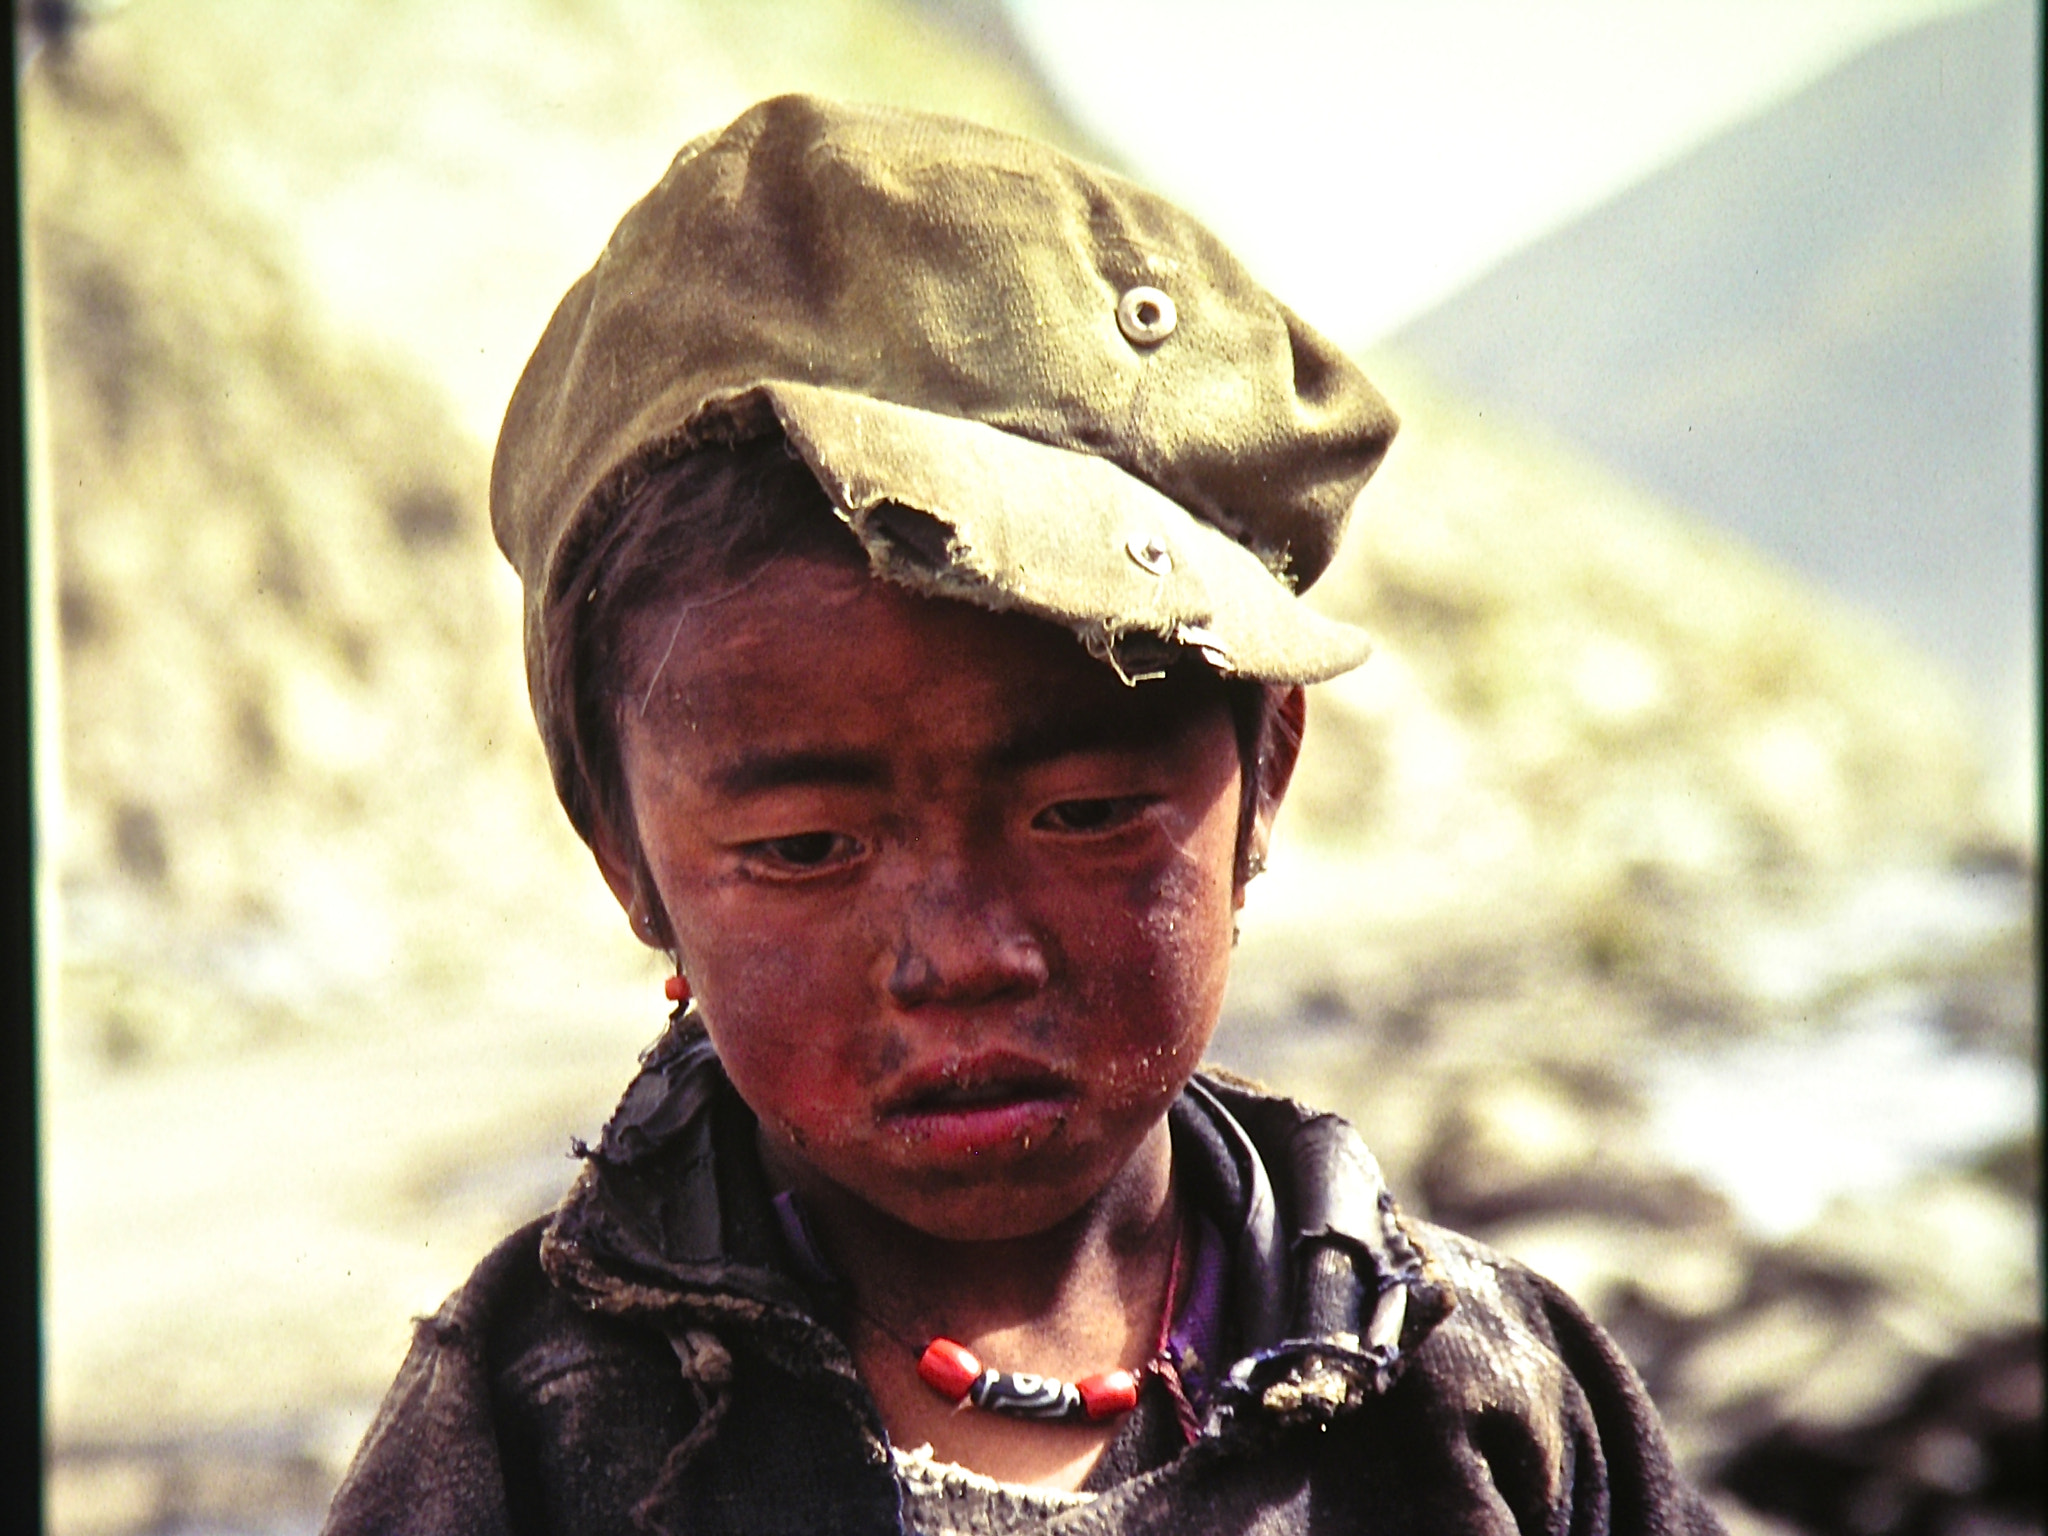 Nikon E8800 sample photo. Tibetan boy photography